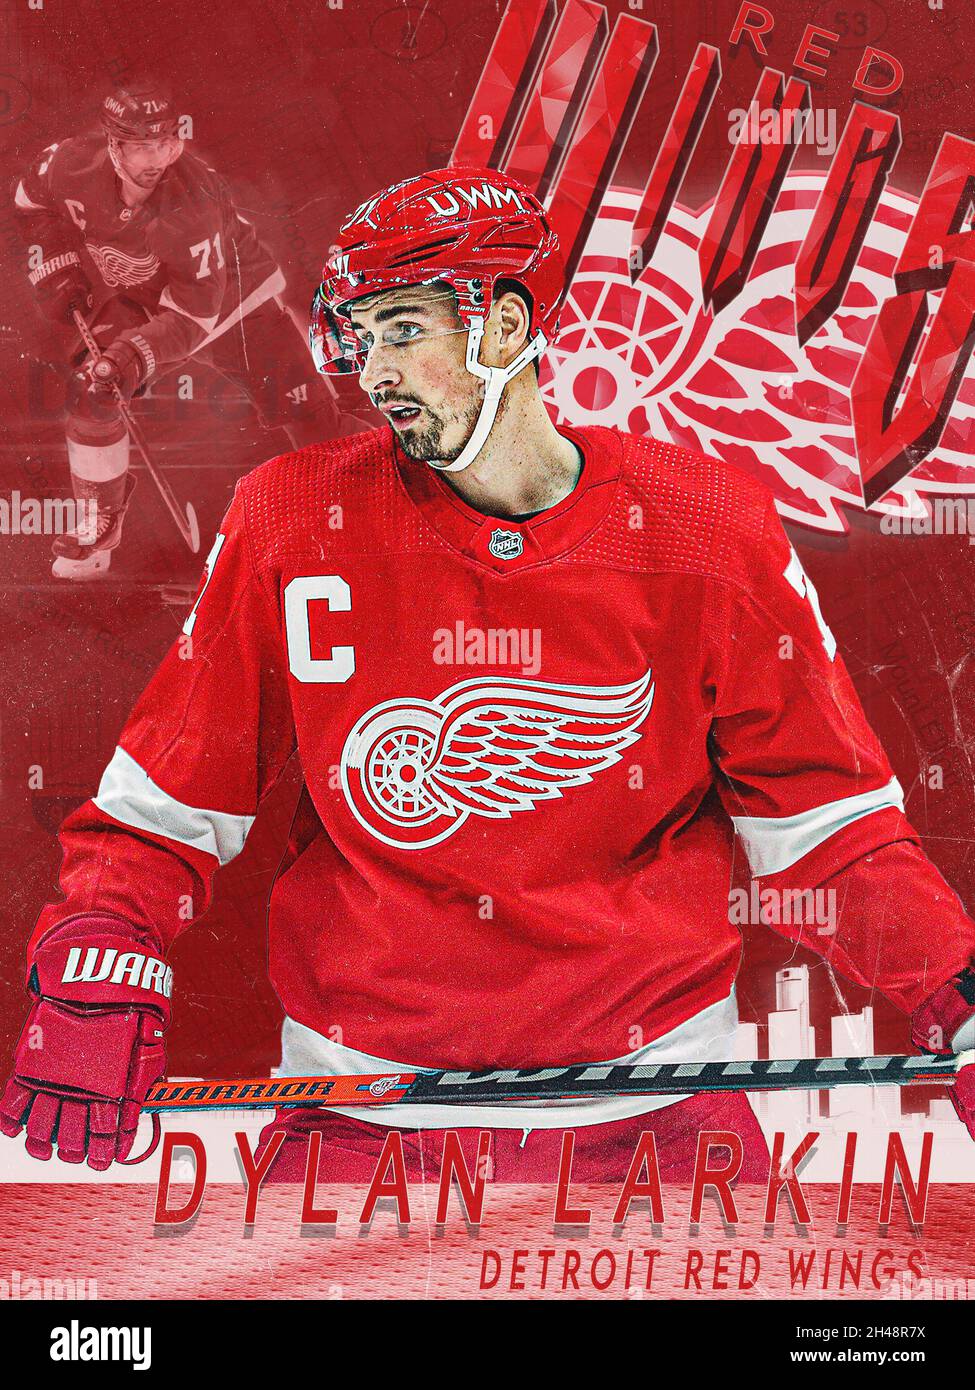 Dylan Larkin Jersey wallpaper credit-@WingWheelWonder  Red wings hockey,  Detroit red wings hockey, Detroit red wings